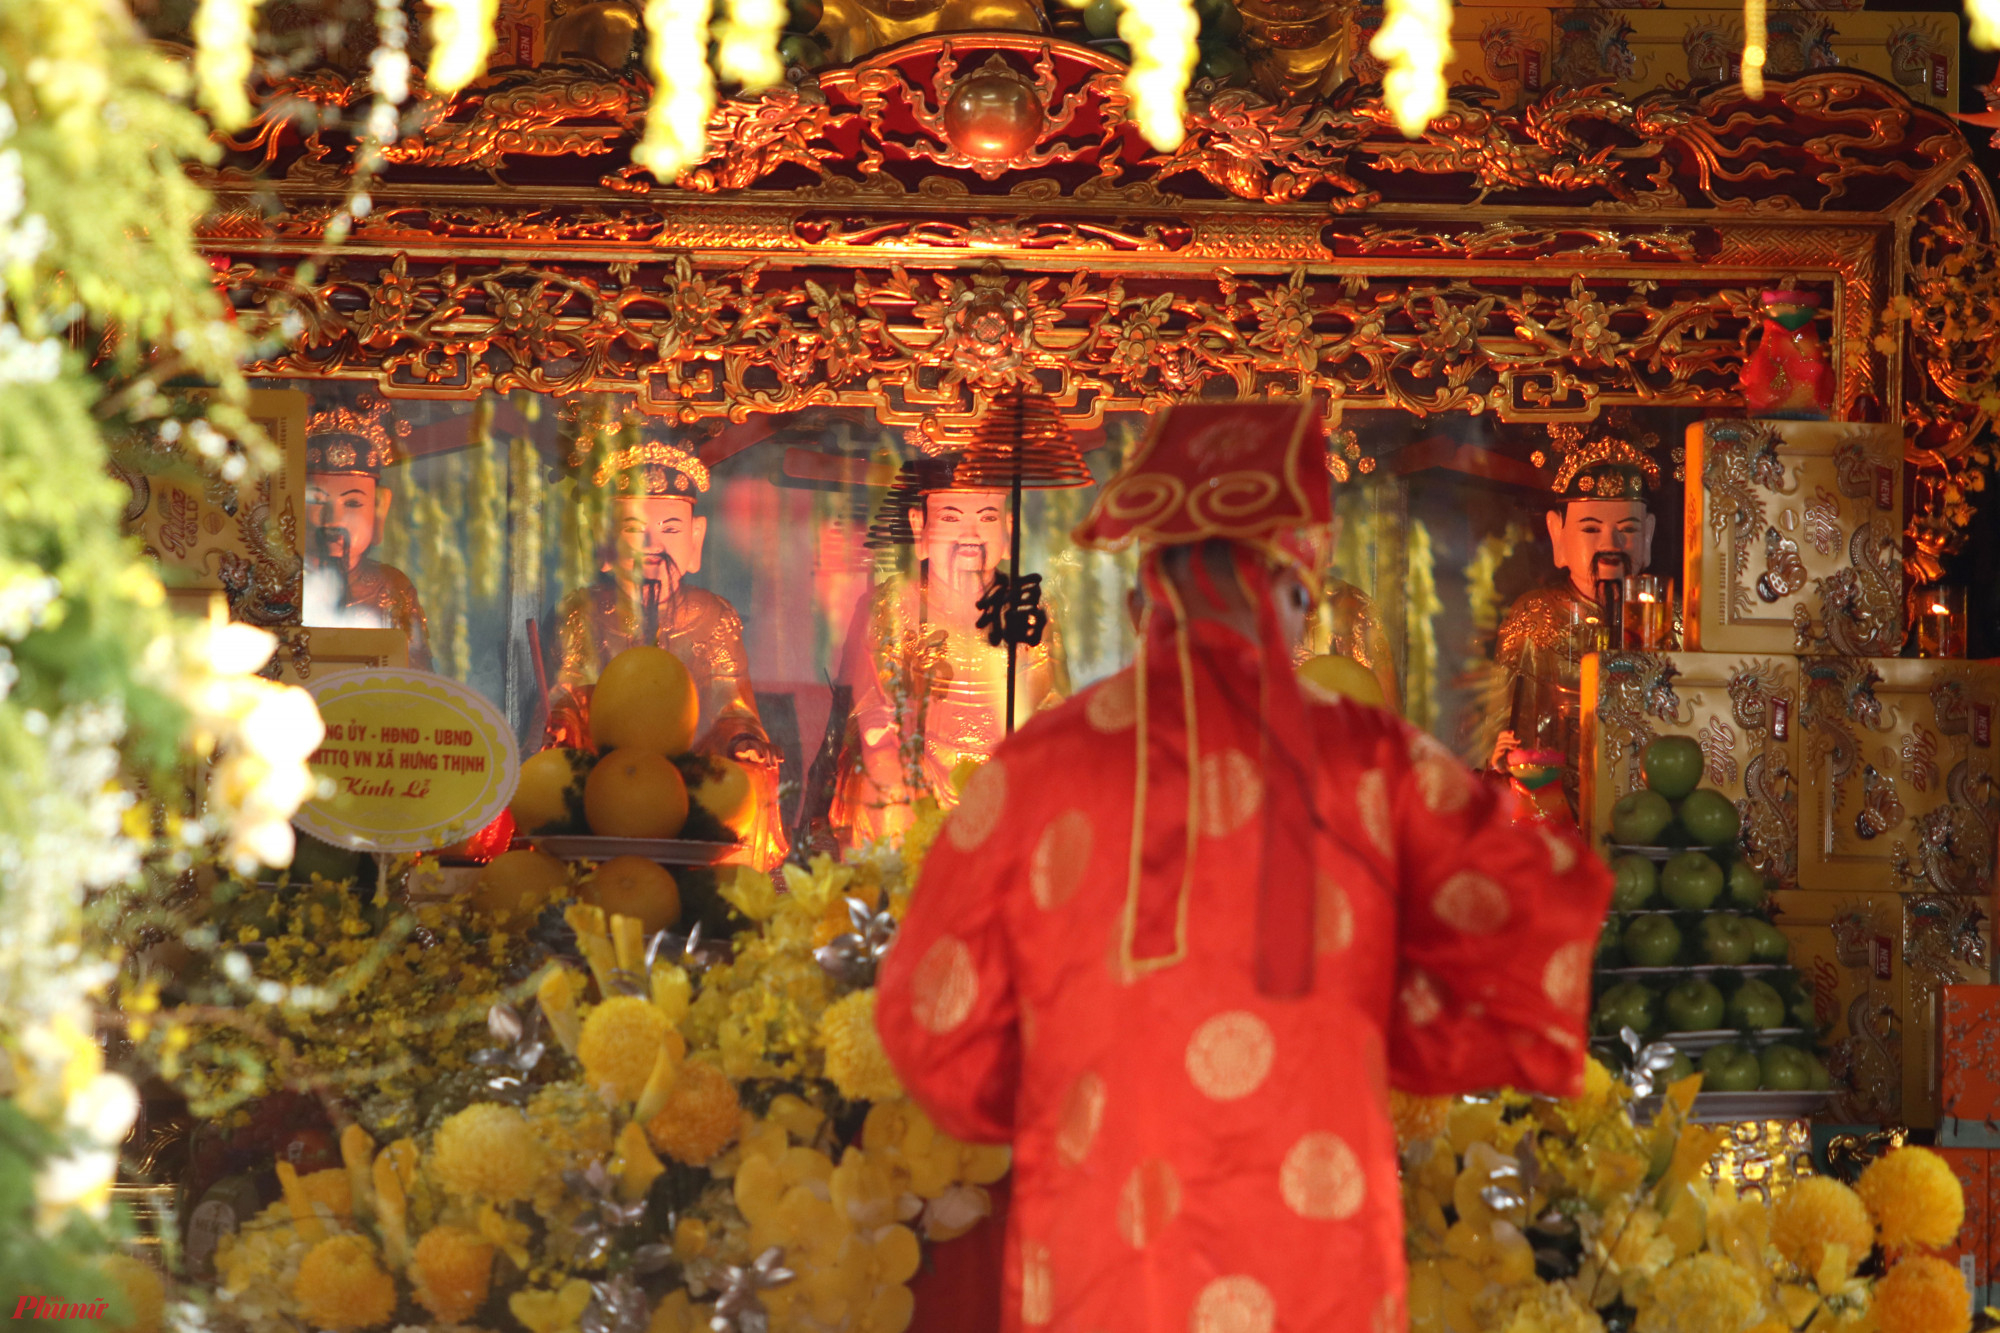 Đền ông Hoàng Mười còn có tên khác là Mỏ Hạc Linh Từ với kiến trúc độc đáo và giá trị văn hóa, tín ngưỡng trong hệ thống đạo Mẫu tứ phủ Liễu Hạnh. Năm 2019, Lễ hội Đền ông Hoàng Mười được Bộ Văn hóa - Thể thao và Du lịch công nhận là Di sản văn hóa phi vật thể quốc gia.